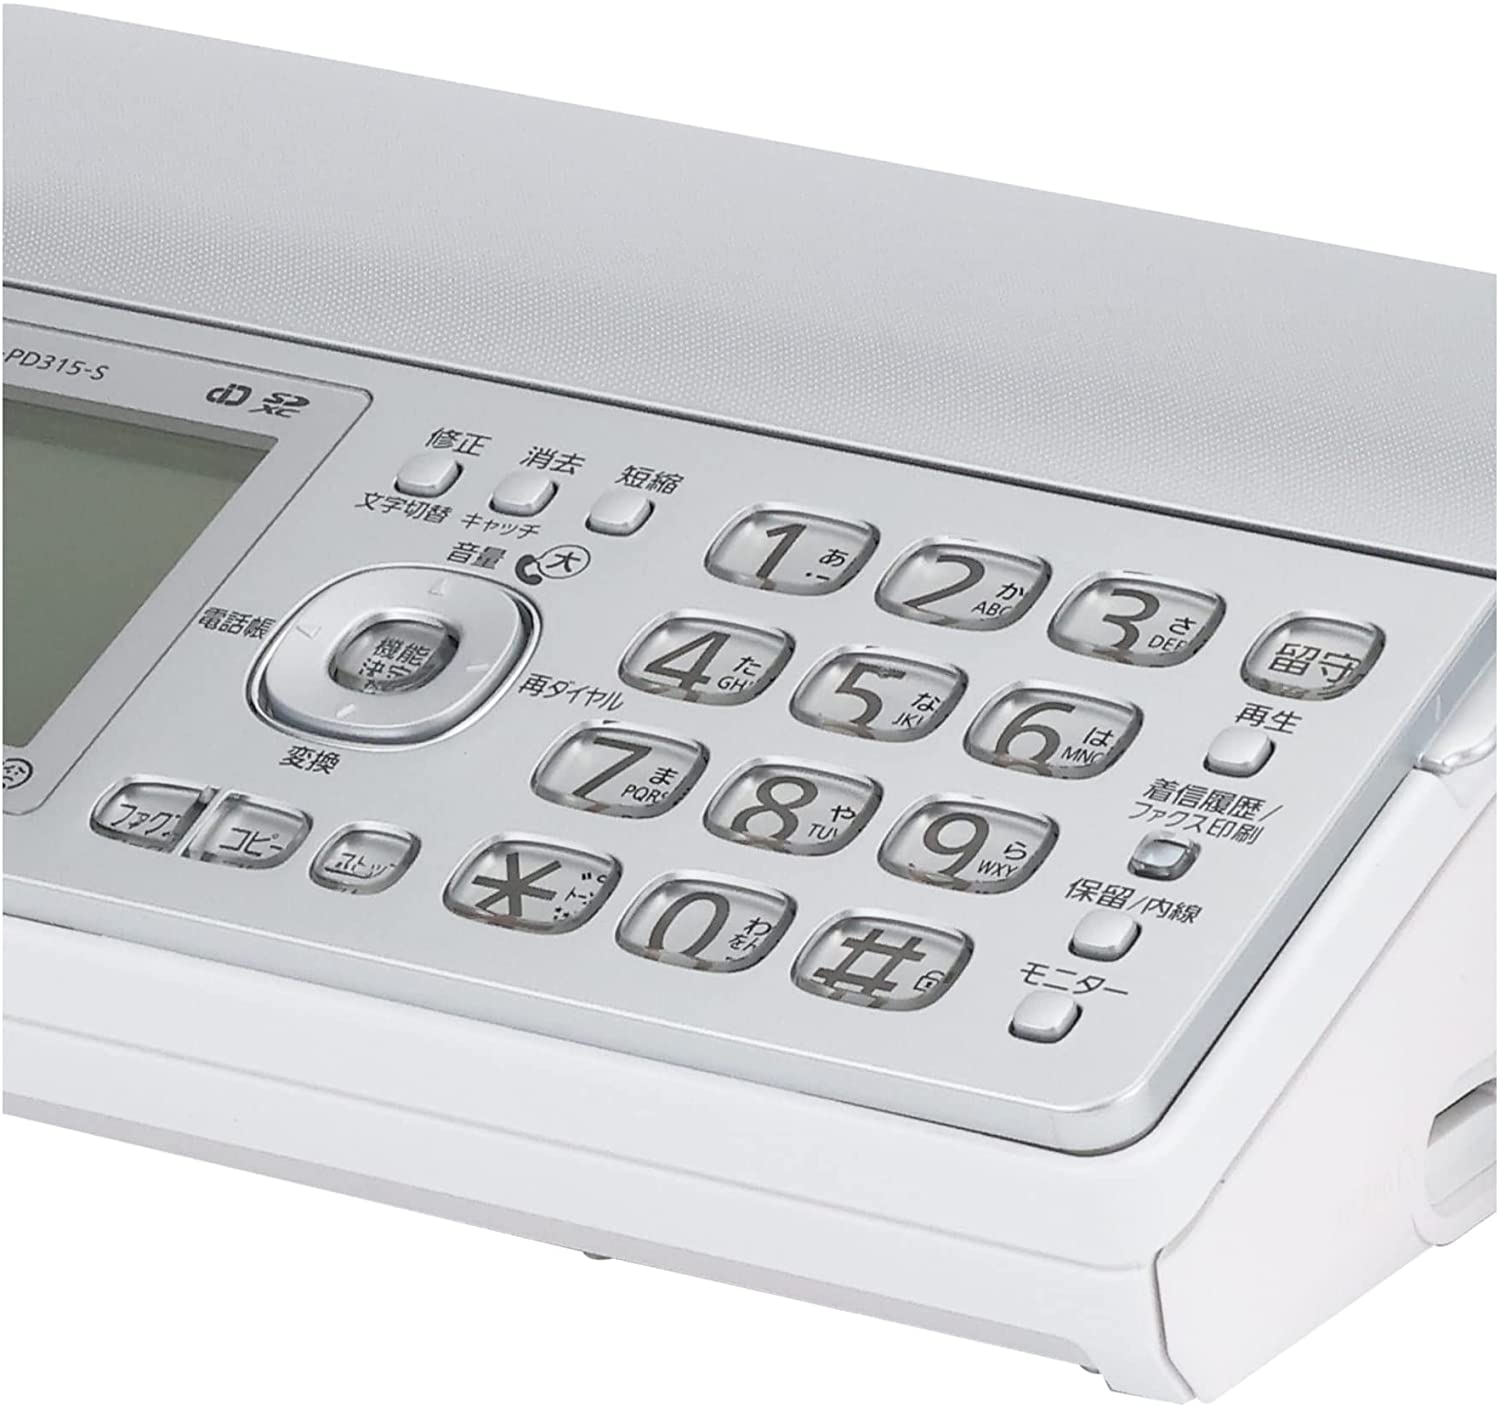 FAX ファクス 電話機 パナソニック Panasonic デジタルコードレス普通紙ファクス 子機1台付き KX-PD315DL-S 激安人気新品